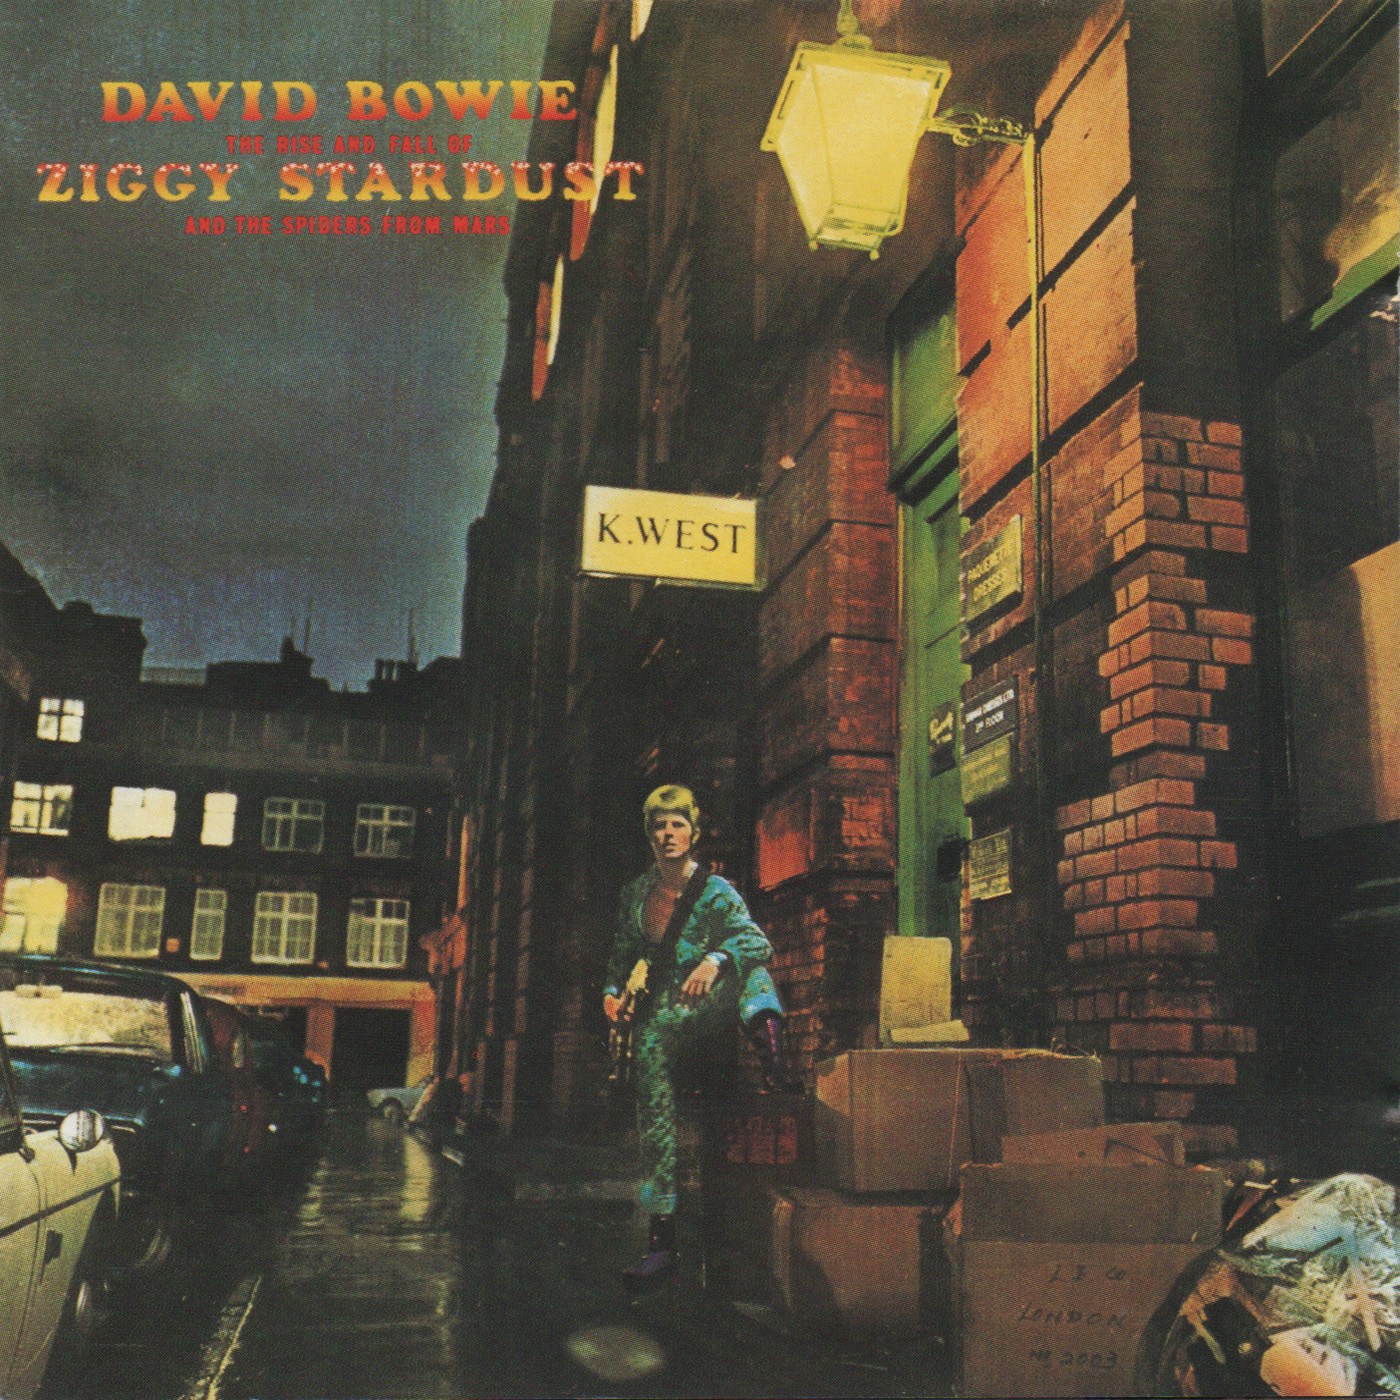 David Bowie-1972-Ziggy Stardust [CDP 79 4400 2]